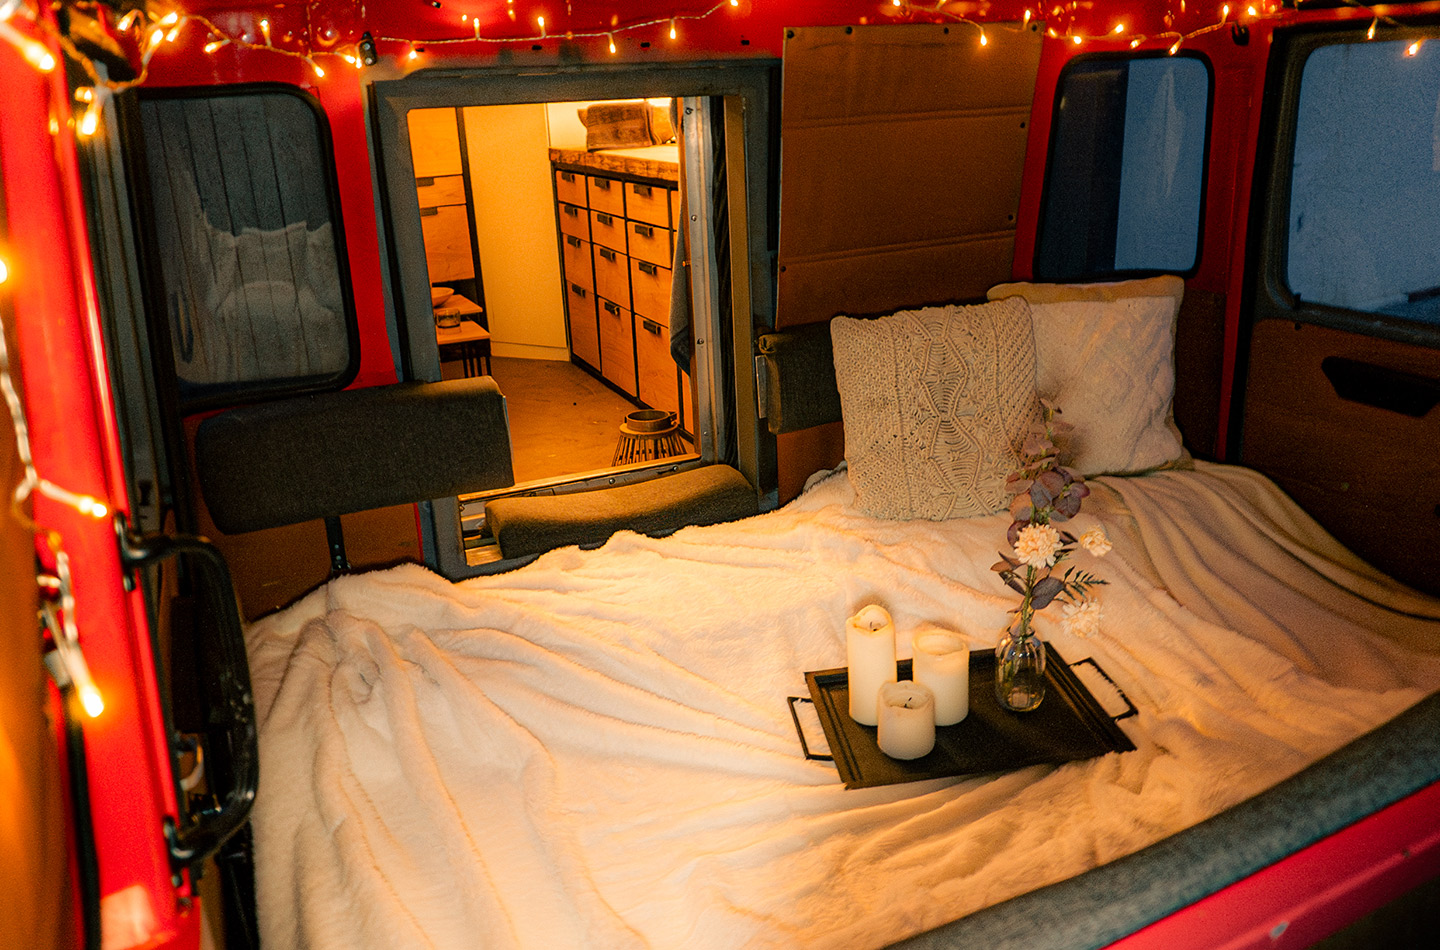 Beleuchtetes Bett mit Kissen, Tablett mit Kerzen und Blumen. Im Hintergrund Kommode.